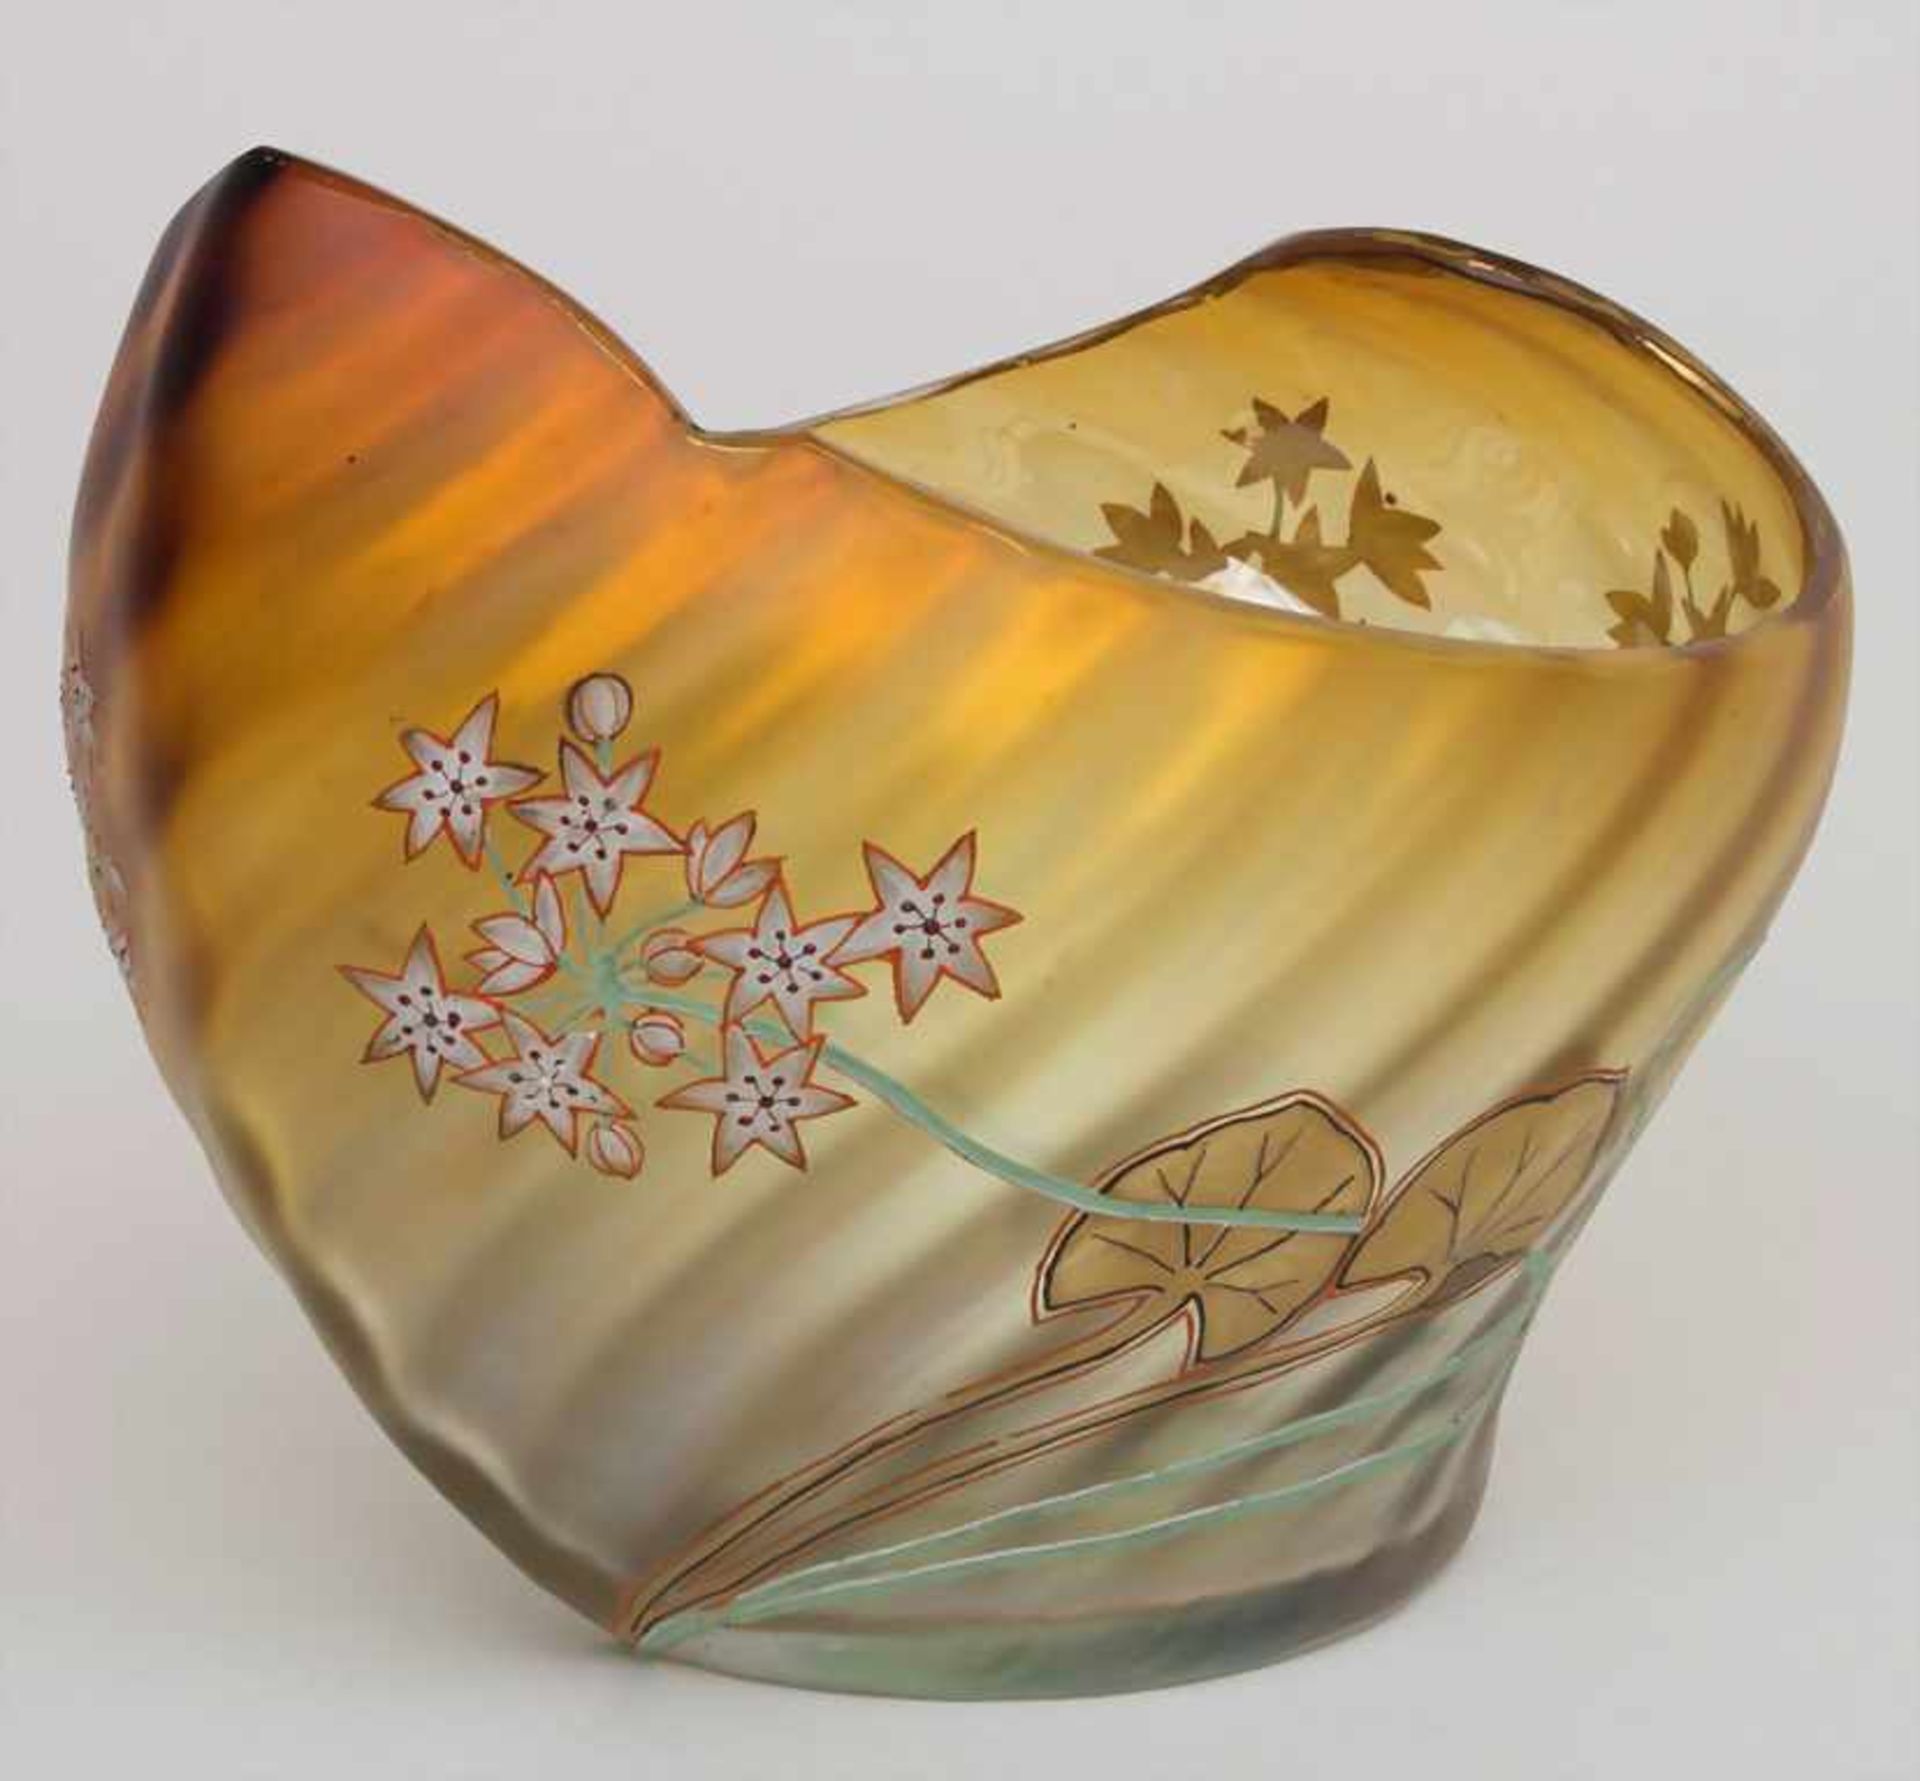 Jugendstil Glaszierschale / An Art Nouveau glass bowl, um 1905Material: farbloses Glas, rot-braun